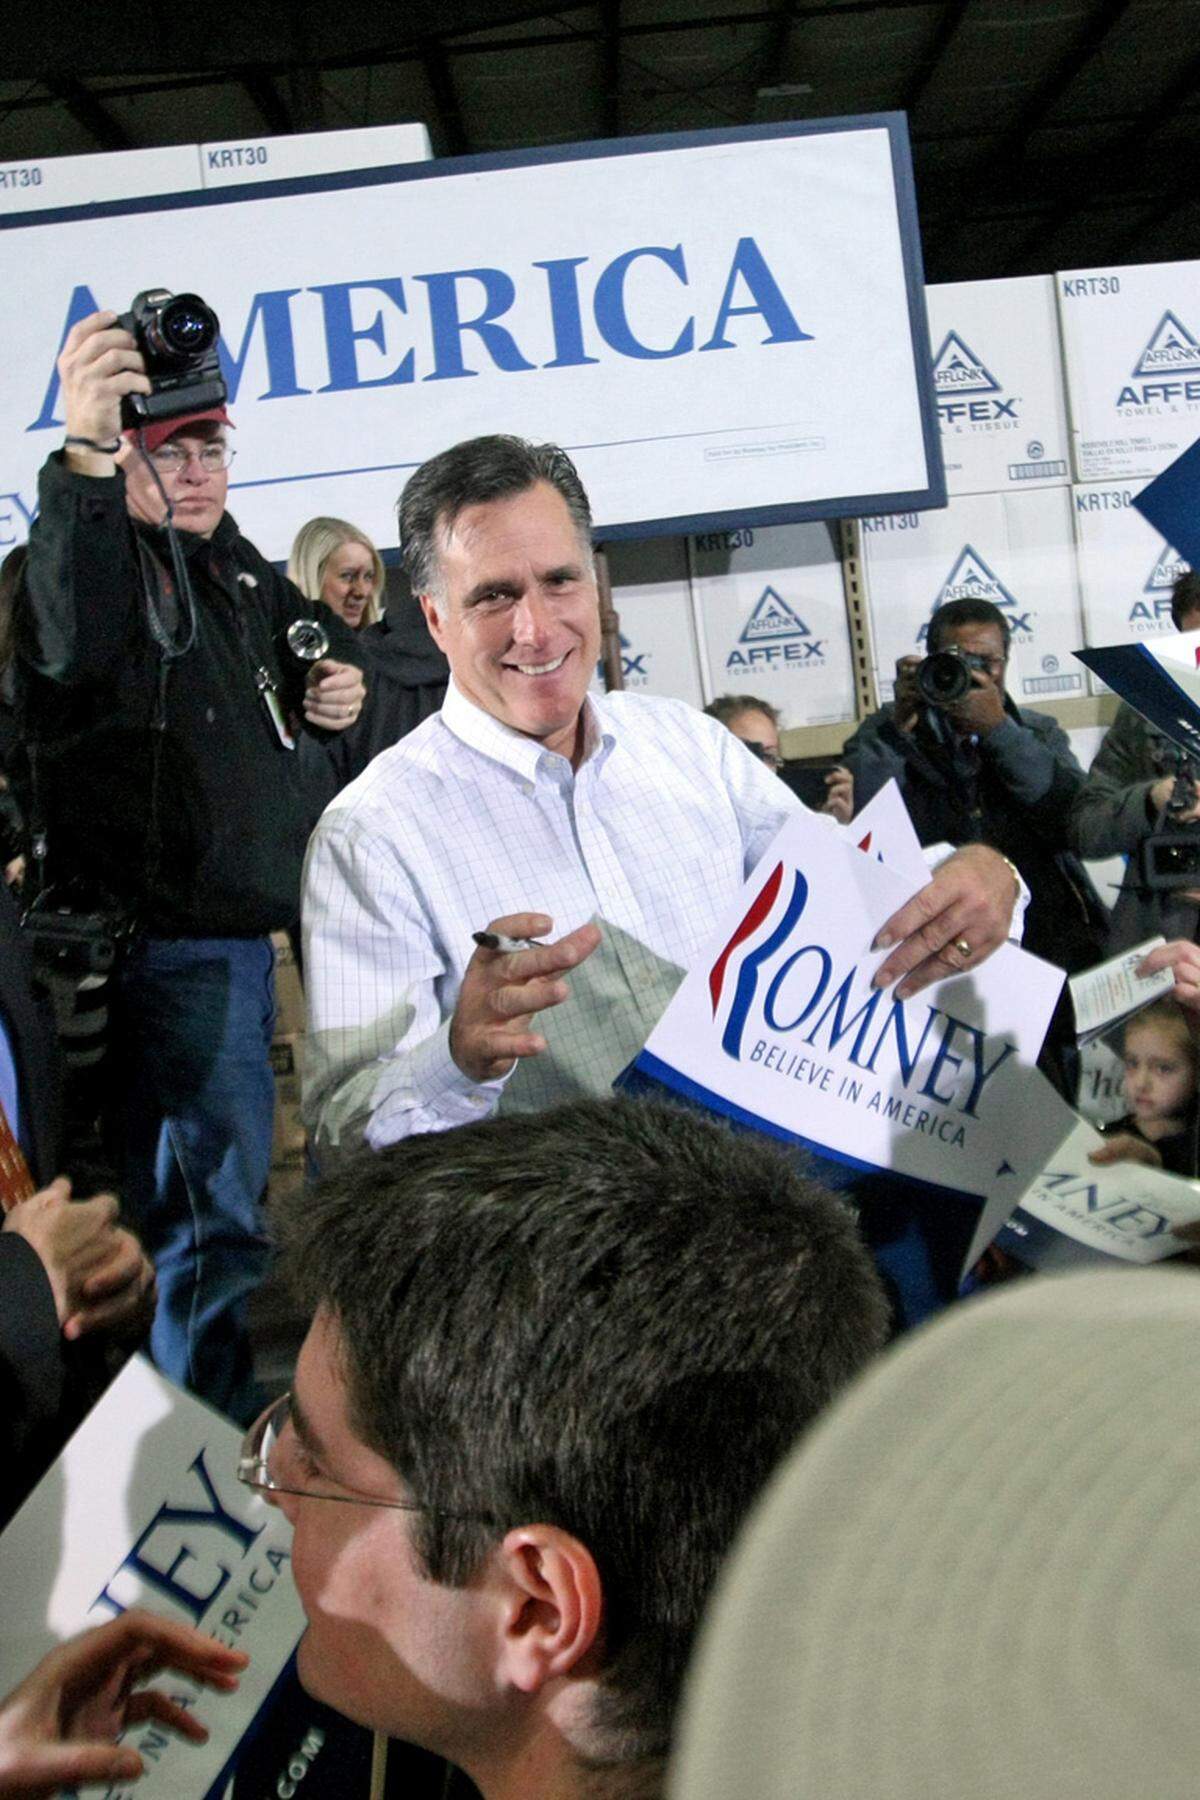 Am 24. Dezember 2005 kündigt Romney an, sich nicht der Wiederwahl als Gouverneur zu stellen. Am 13. Februar 2007 erklärt er warum: Er lässt sich offiziell als Kandidat für das Präsidentenamt aufstellen und sammelt in der Folge rund 44 Millionen US-Dollar an Spendengeldern - deutlich mehr als seine Konkurrenten. Dennoch muss er McCain den Vortritt lassen. Vier Jahre später übersteht Romney die Vorwahlen.